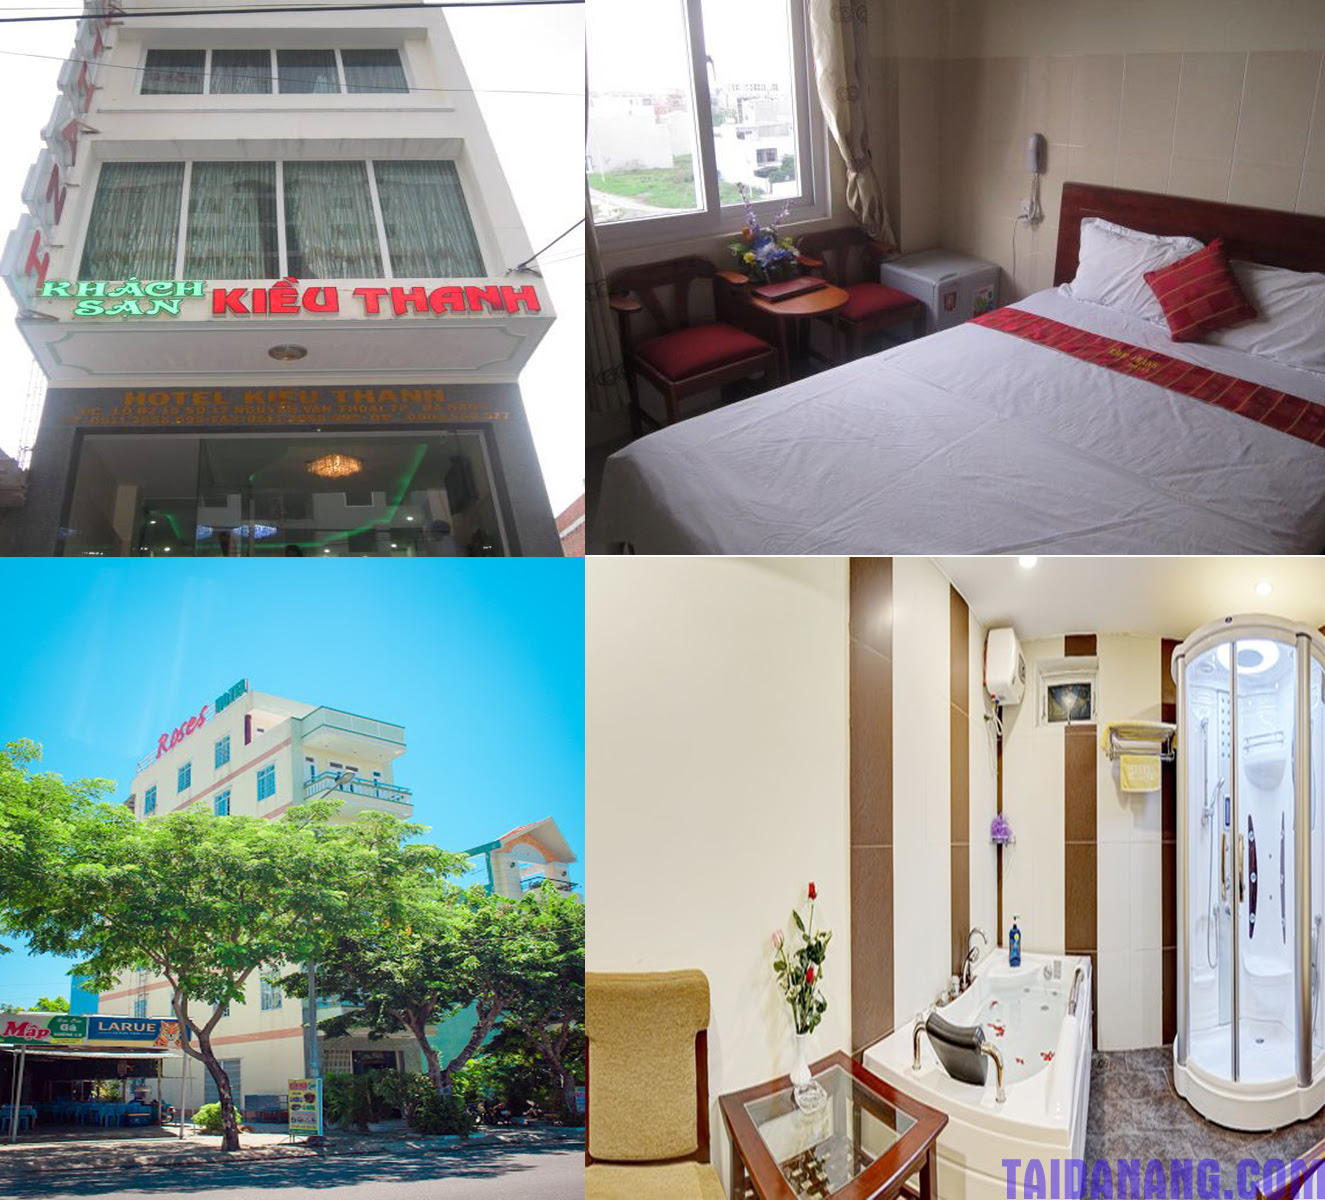 Kinh nghiệm du lịch Đà Nẵng về chọn lựa các khách sạn giá rẻ Kinh-nghiem-du-lich-da-nang-319